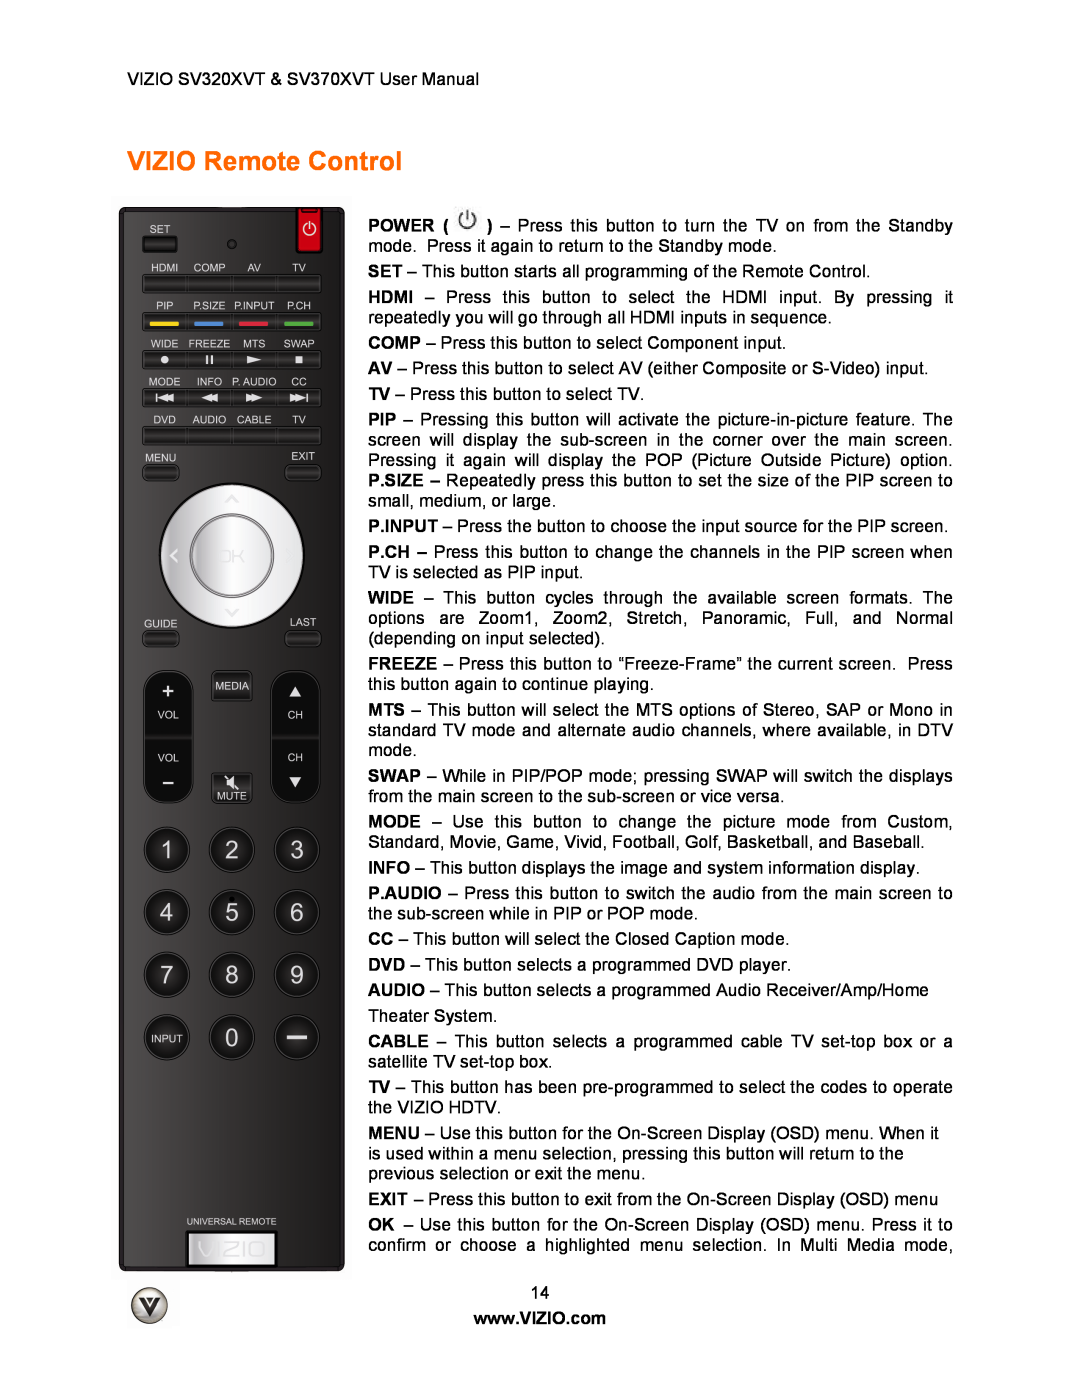 Vizio SV320XVT, SV370XVT user manual VIZIO Remote Control 